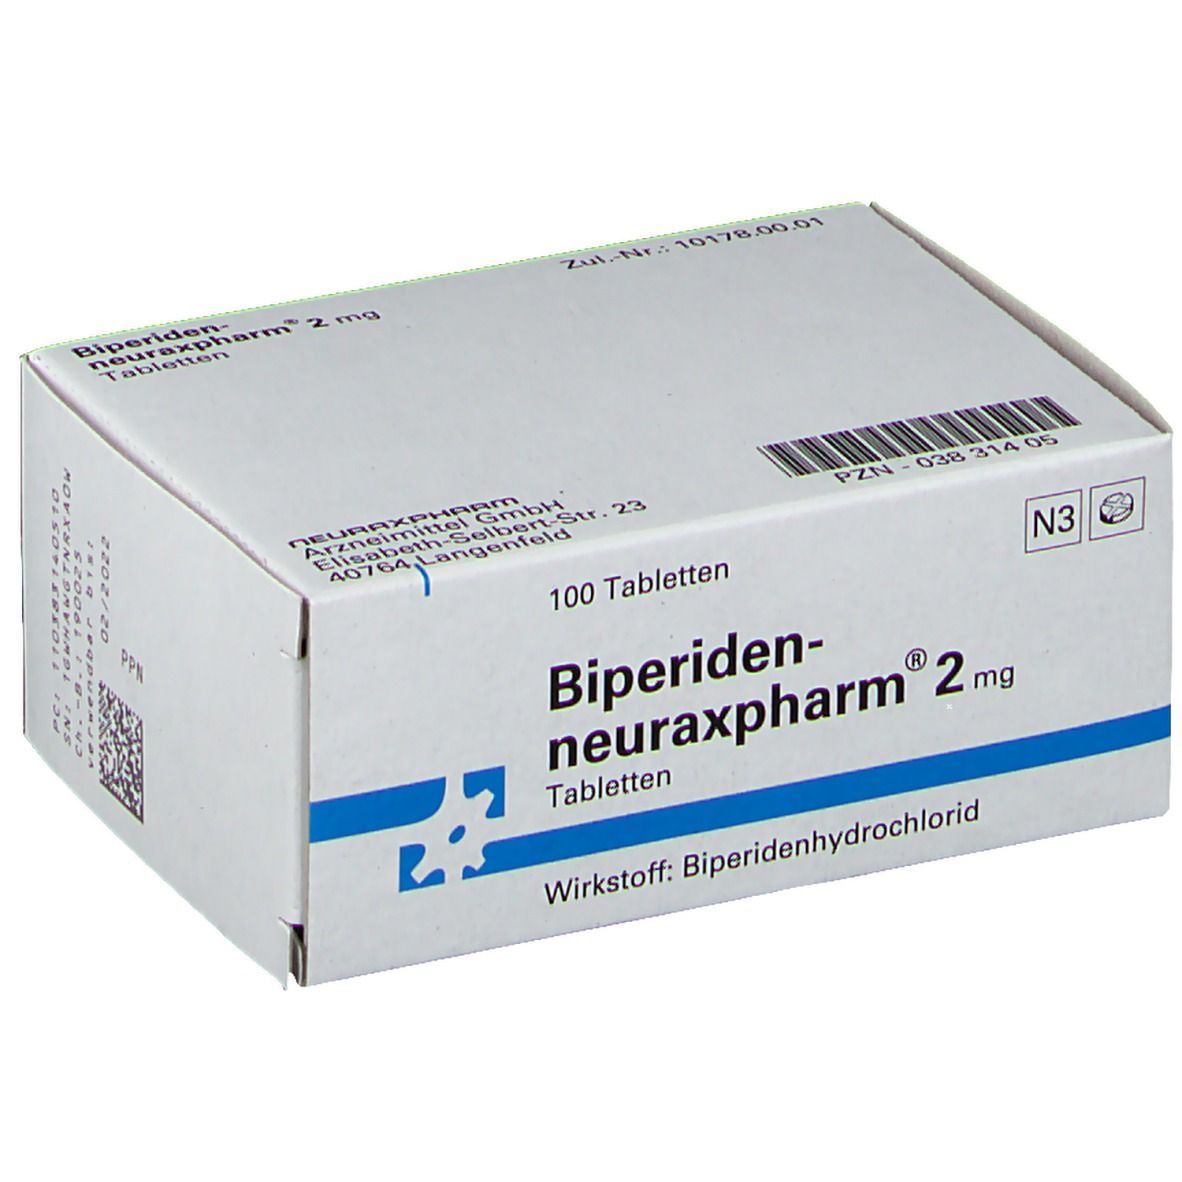 Biperiden-neuraxpharm® 2 mg